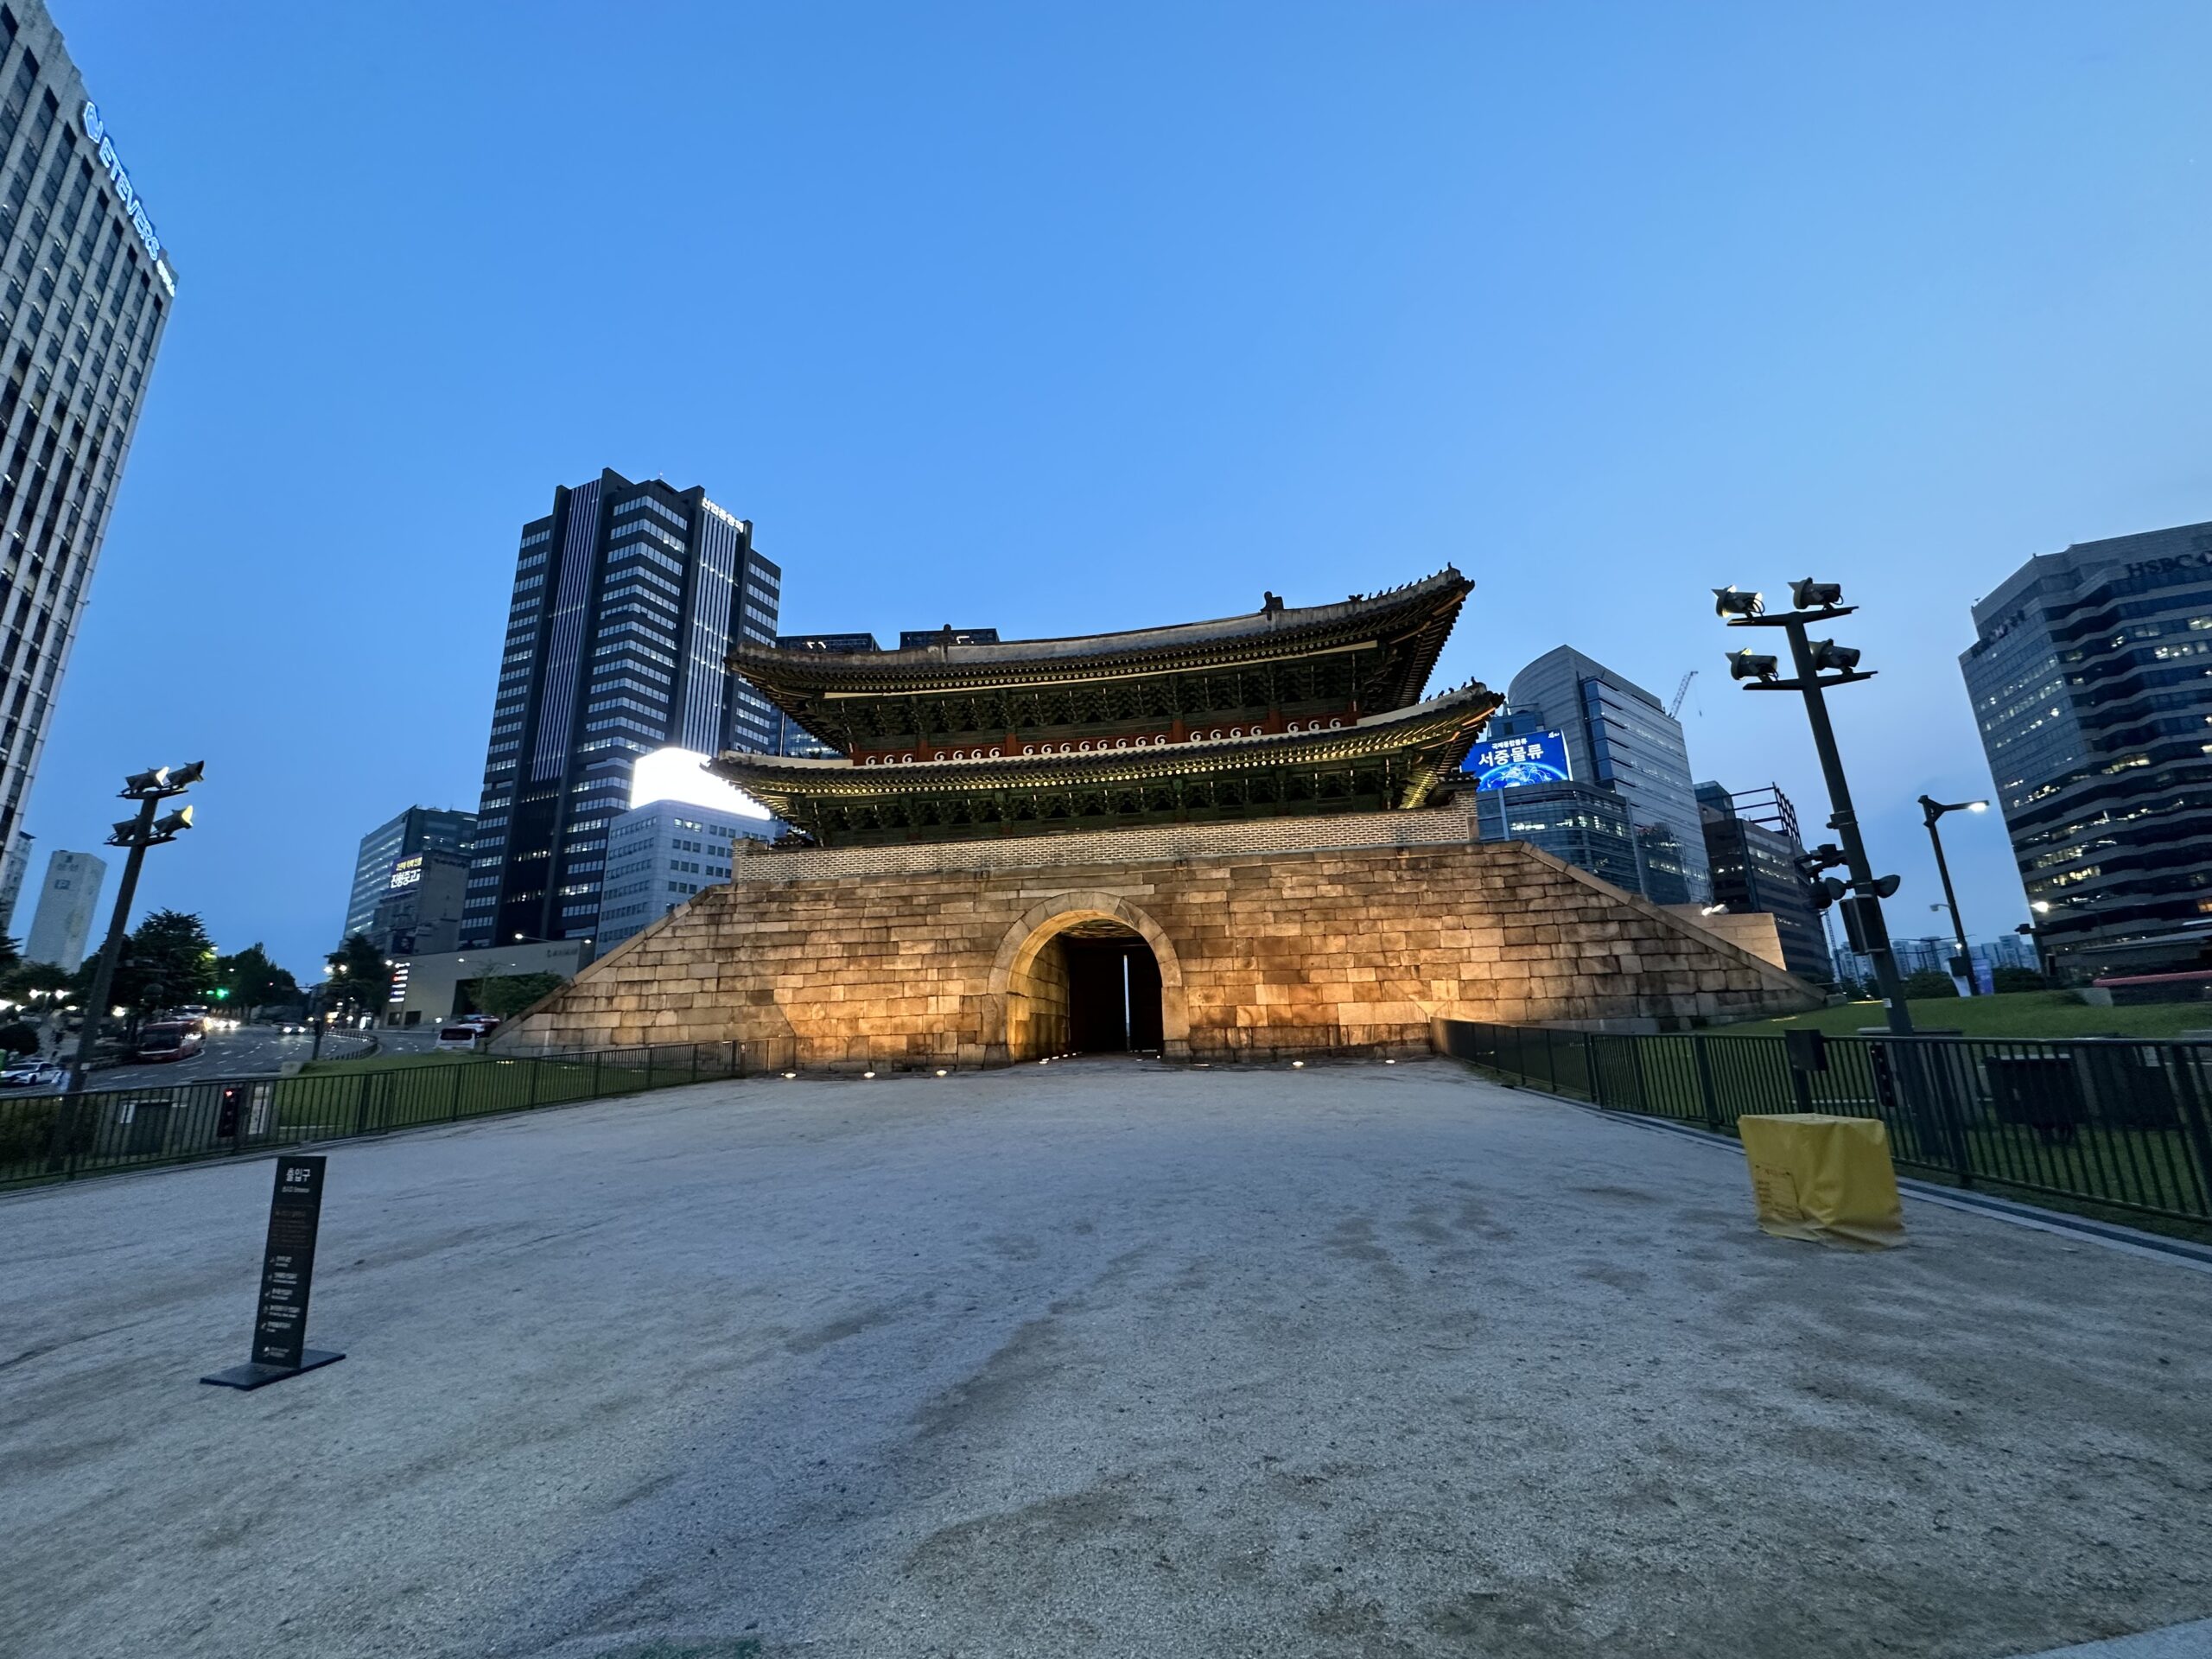 Sungnyemun gate in Seoul.